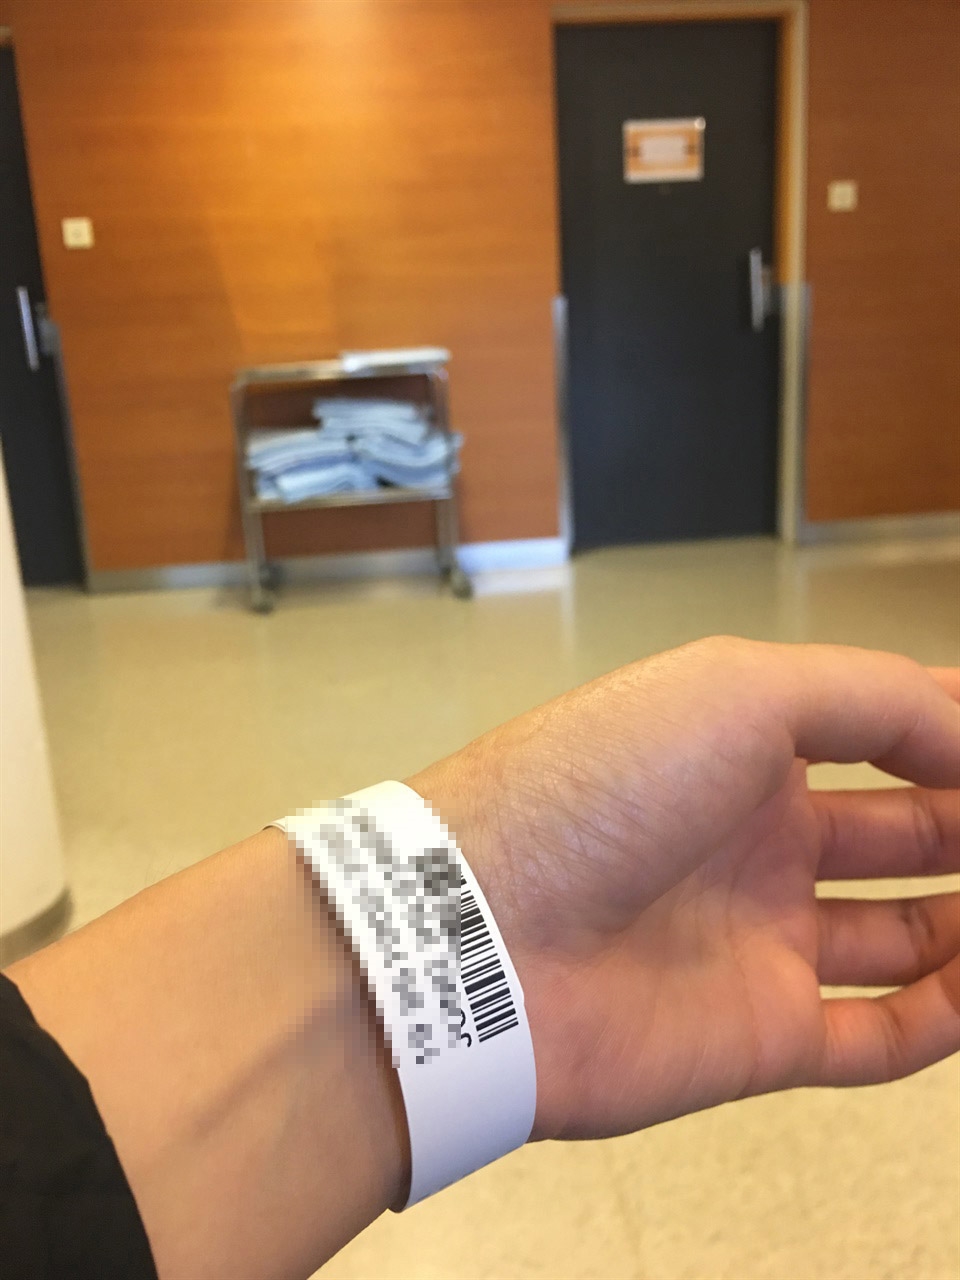 팔을 다쳐서 응급실에 갔을 때 찍은 사진. 내 이름을 언제 부를지 몰라 하염없이 기다려야 했다. 